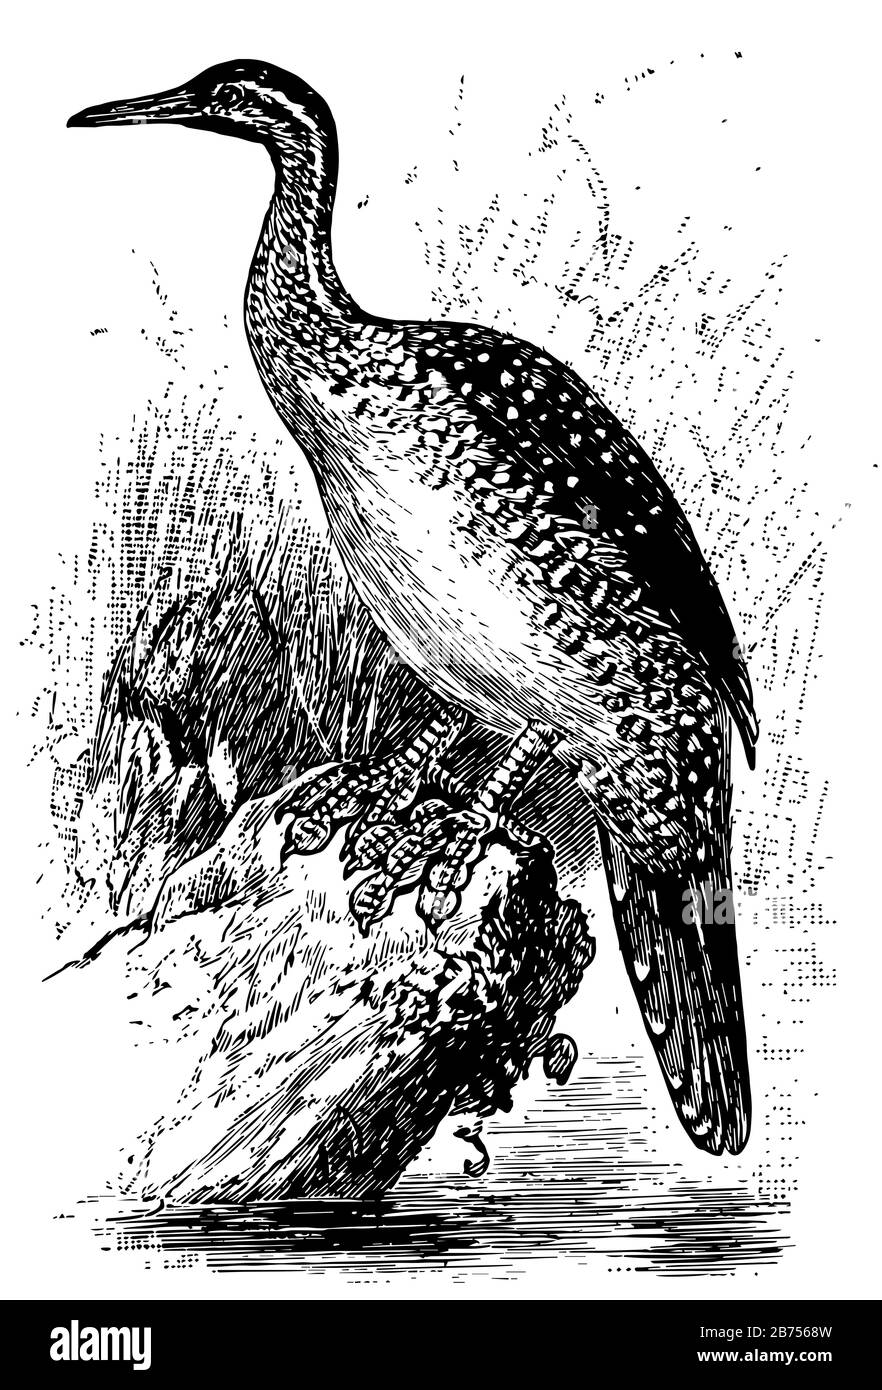 African Finfoot è un uccello acquatico della famiglia Heliornithidae, disegno di linea vintage o illustrazione di incisione. Illustrazione Vettoriale